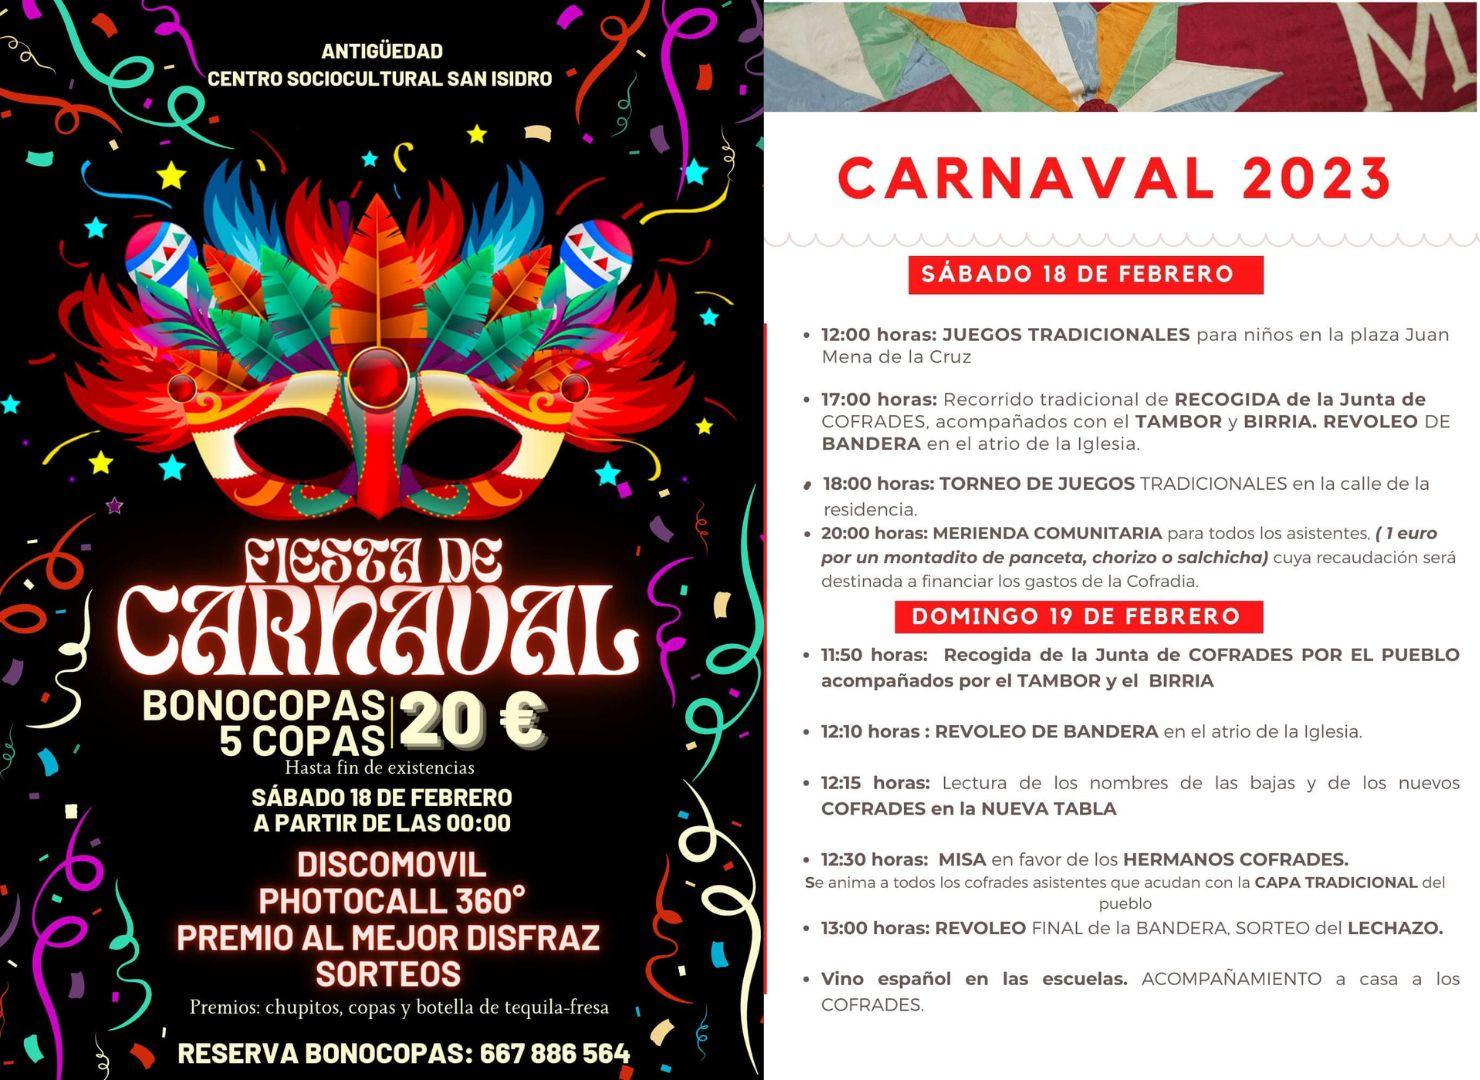 Carnaval 2023 en el Cerrato5